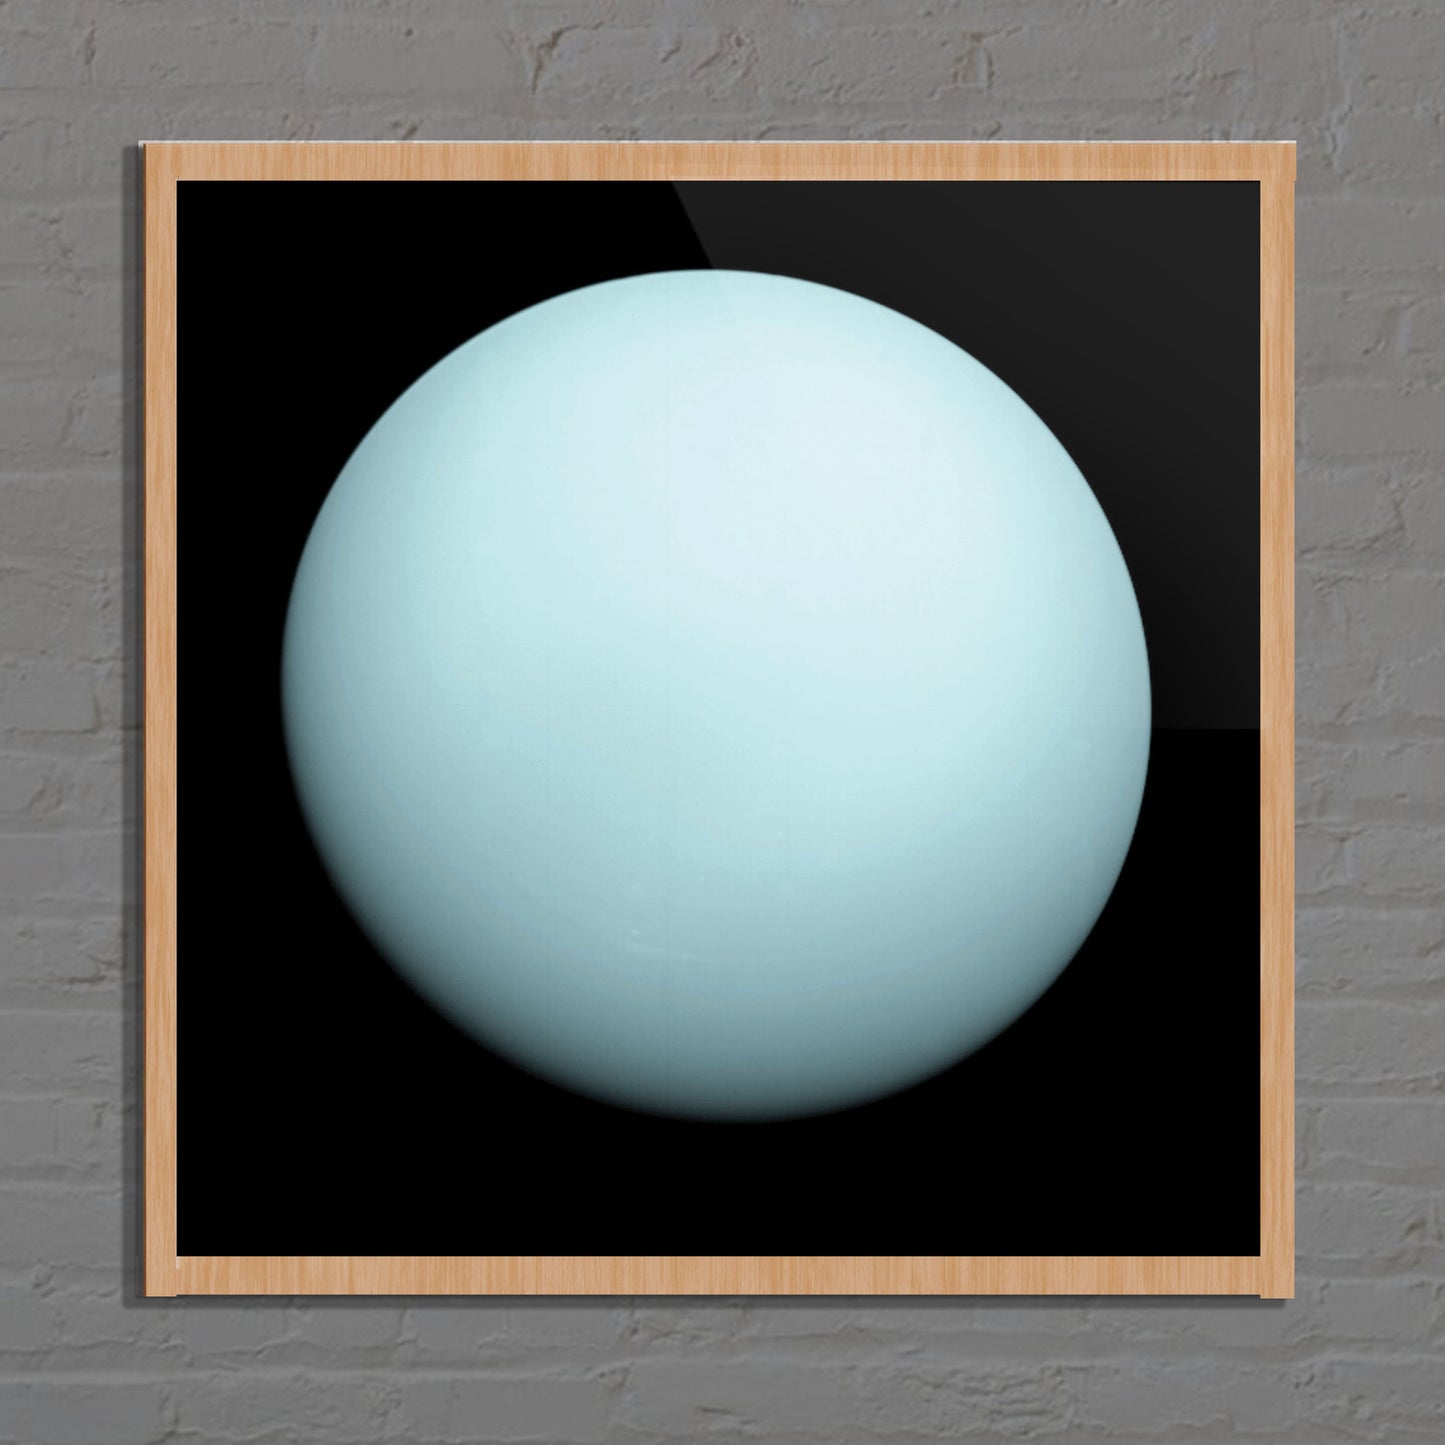 Uranus Poster